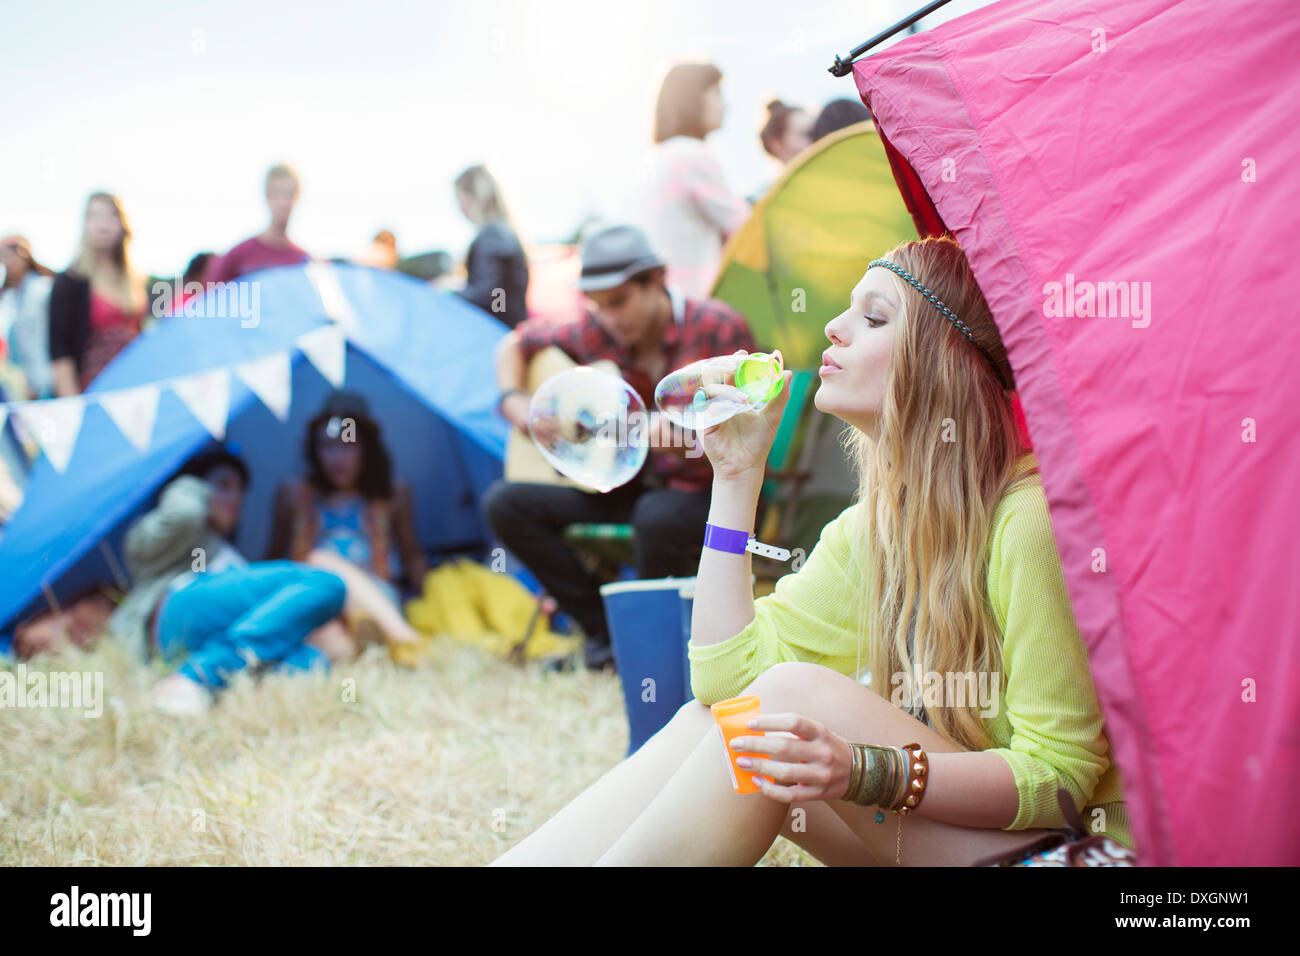 Woman blowing bubbles à partir de la tente au festival de musique Banque D'Images